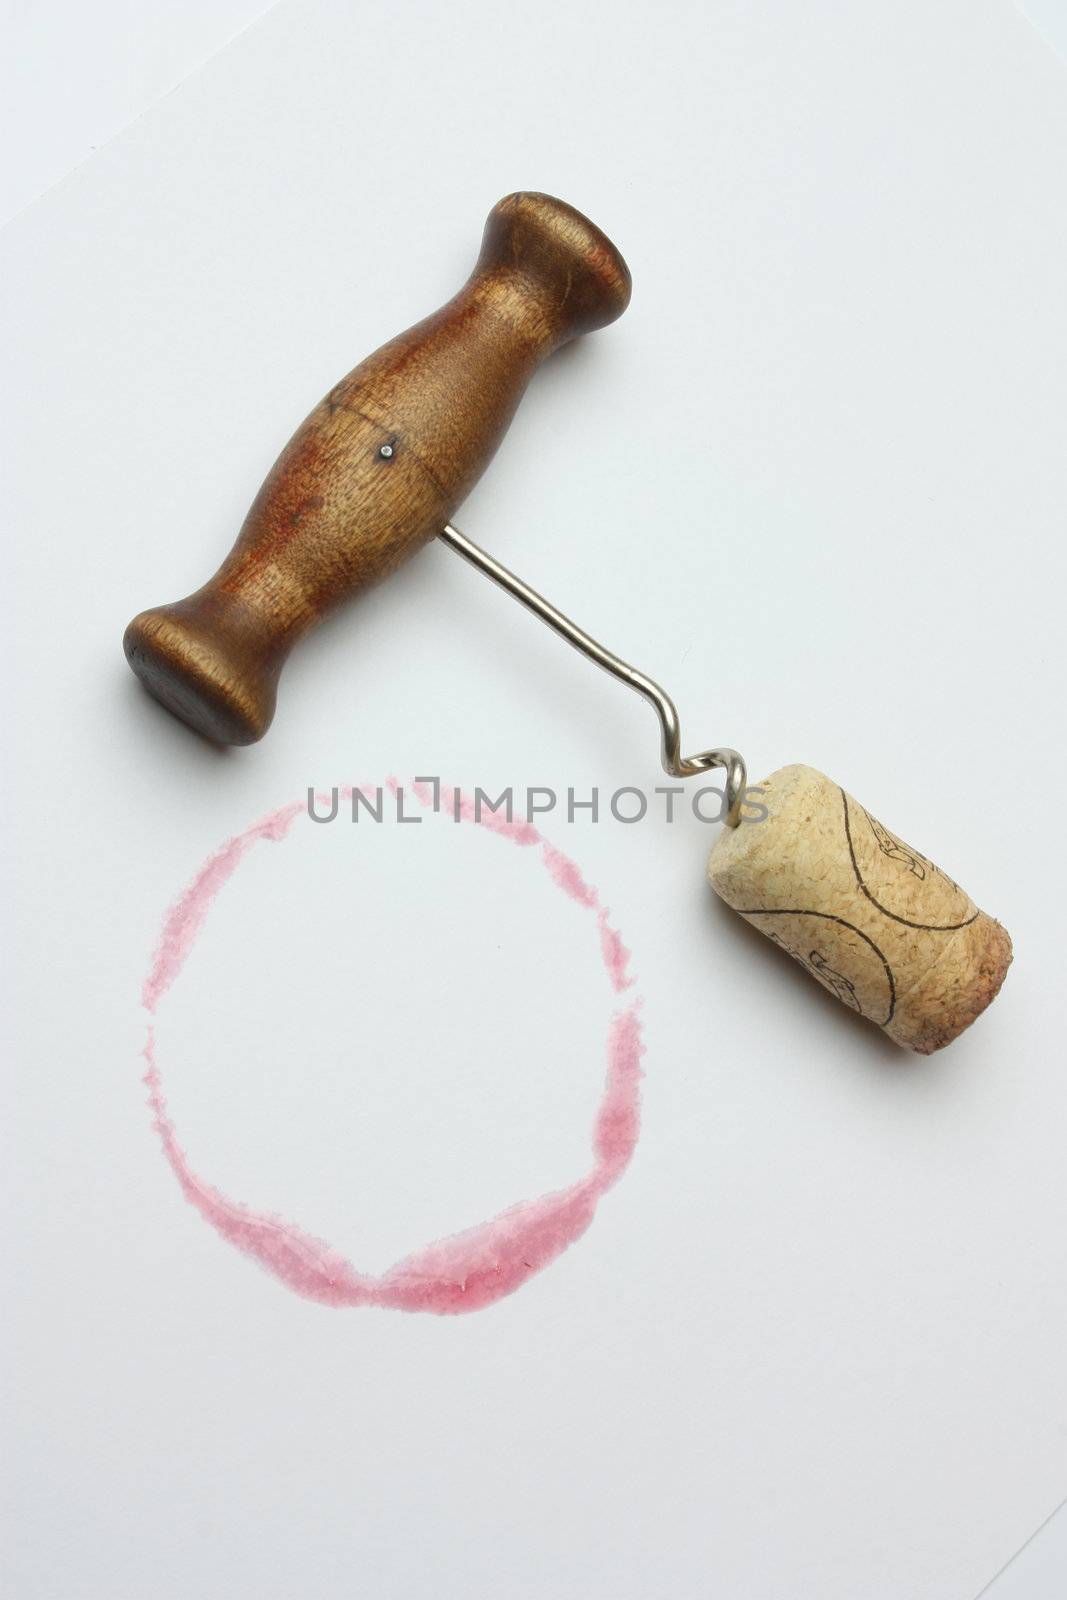 corkscrew and cork by oleg_zhukov